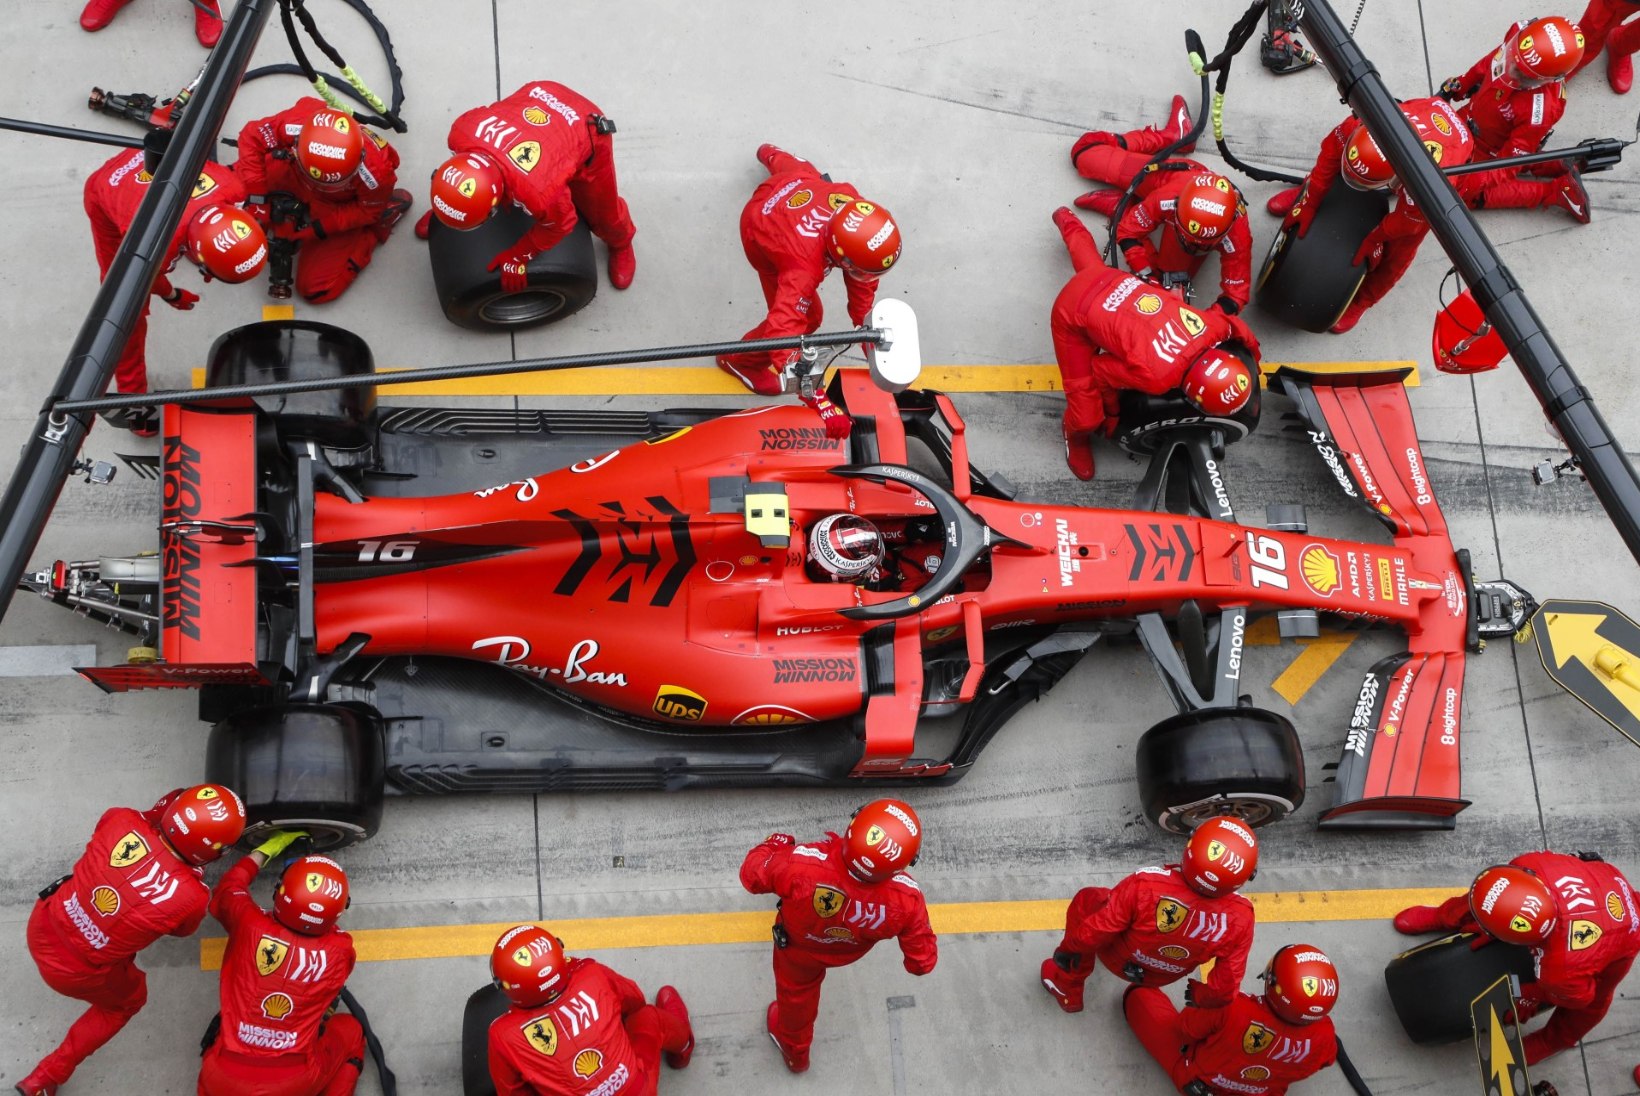 Kas Ferrari saamatus toob kaasa Mercedese järjekordse triumfi?